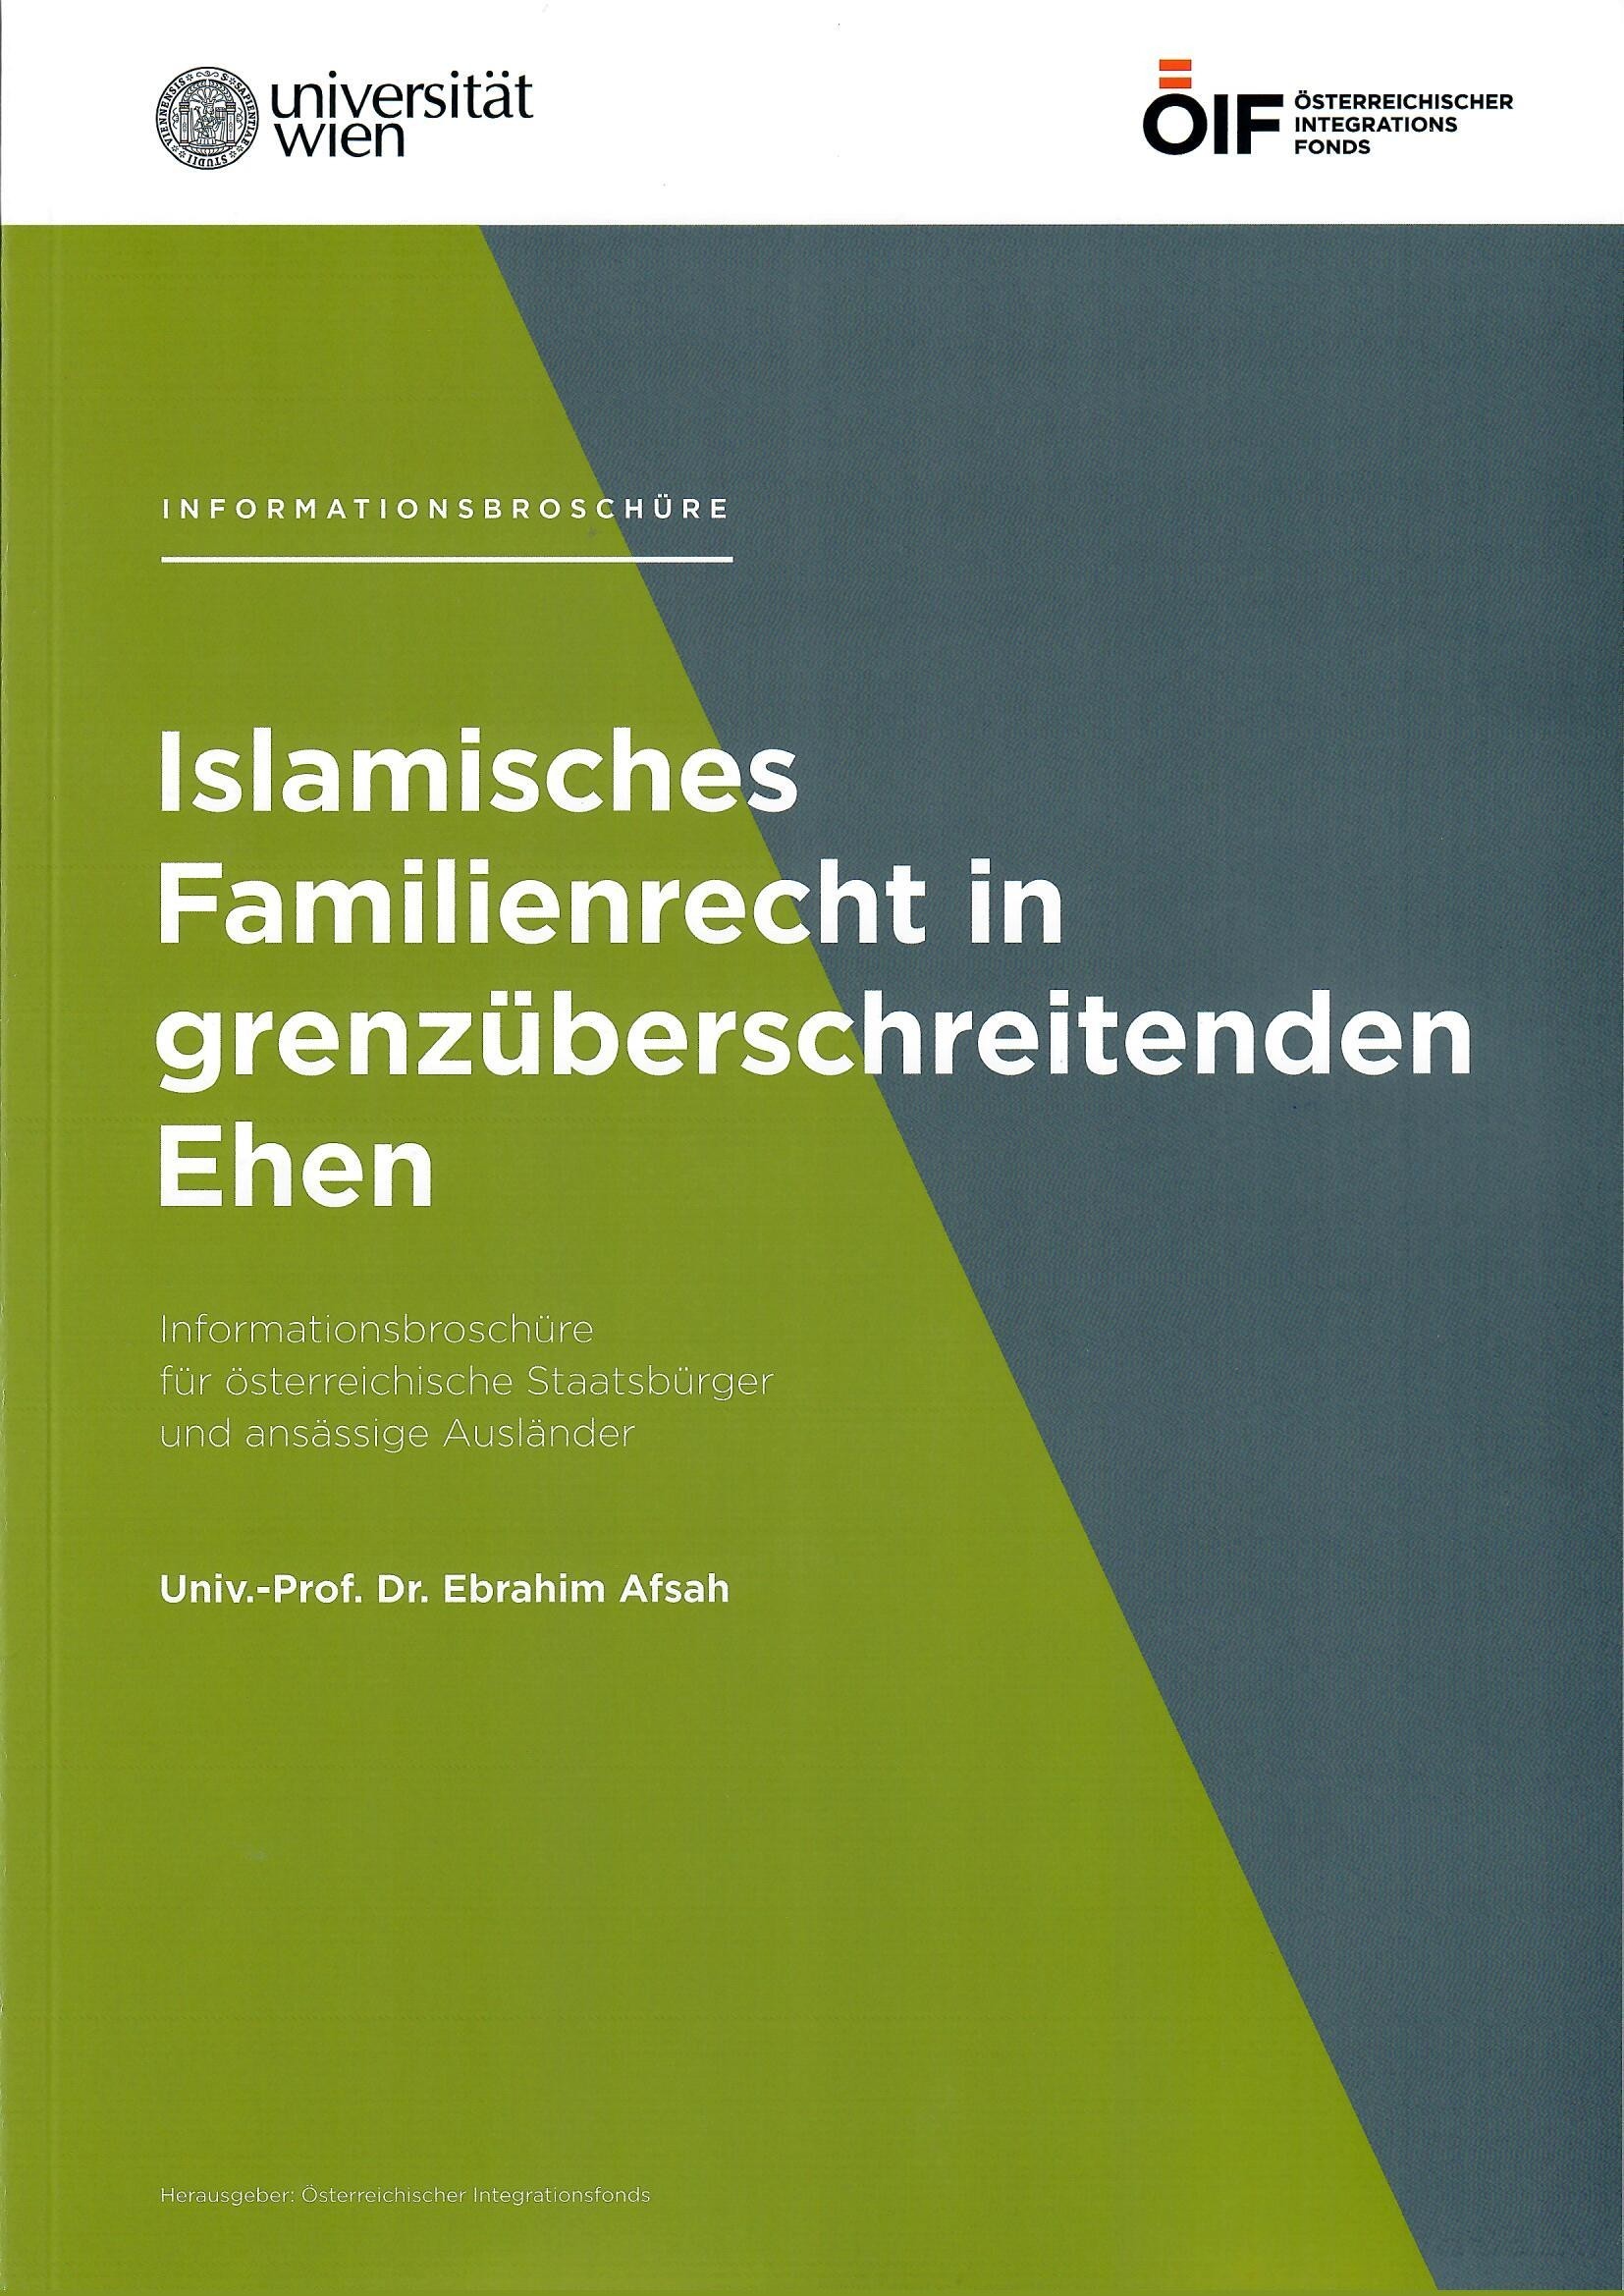 Islamisches Familienrecht in grenzüberschreitenden Ehen